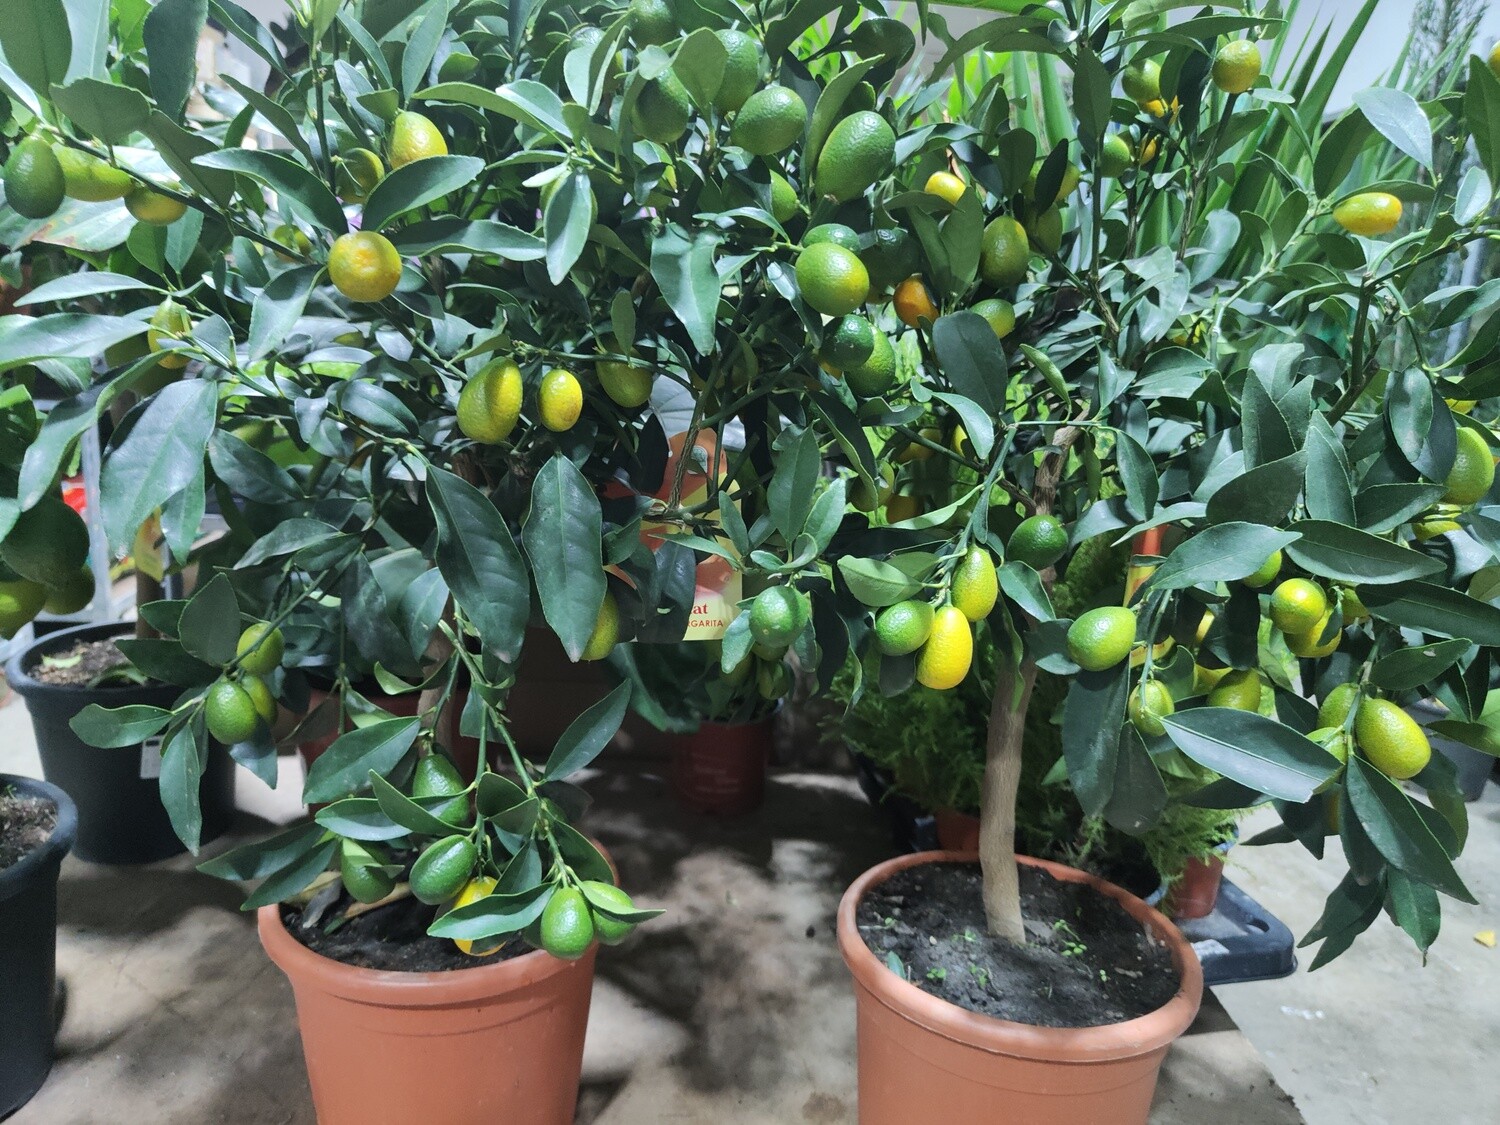 "AmaPlant Arbolito Naranjo enano" Citrus Kumquat muy frondoso y gran productor de frutos 60-70 cm 8 L (citrico) - Exterior pleno sol o interior con mucha luz cerca de una ventana - ENVIO INCLUIDO